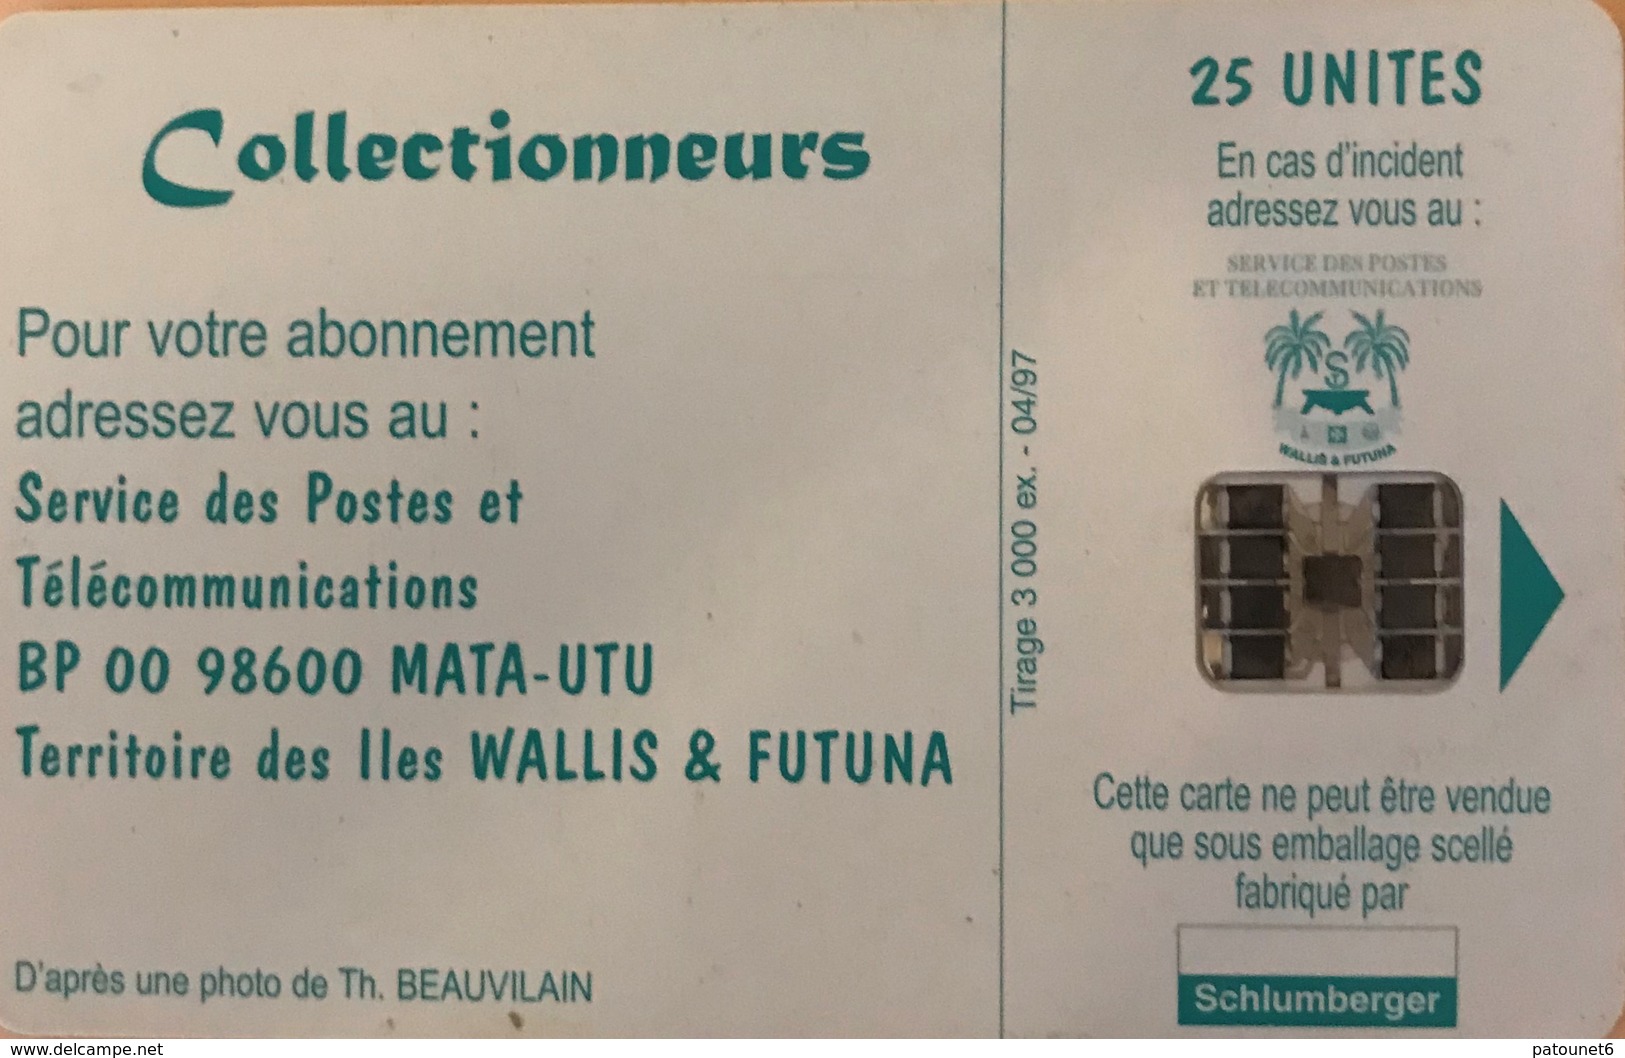 WALLIS-et-FUTUNA - Vue Aérienne De " Mata Utu " - Wallis E Futuna